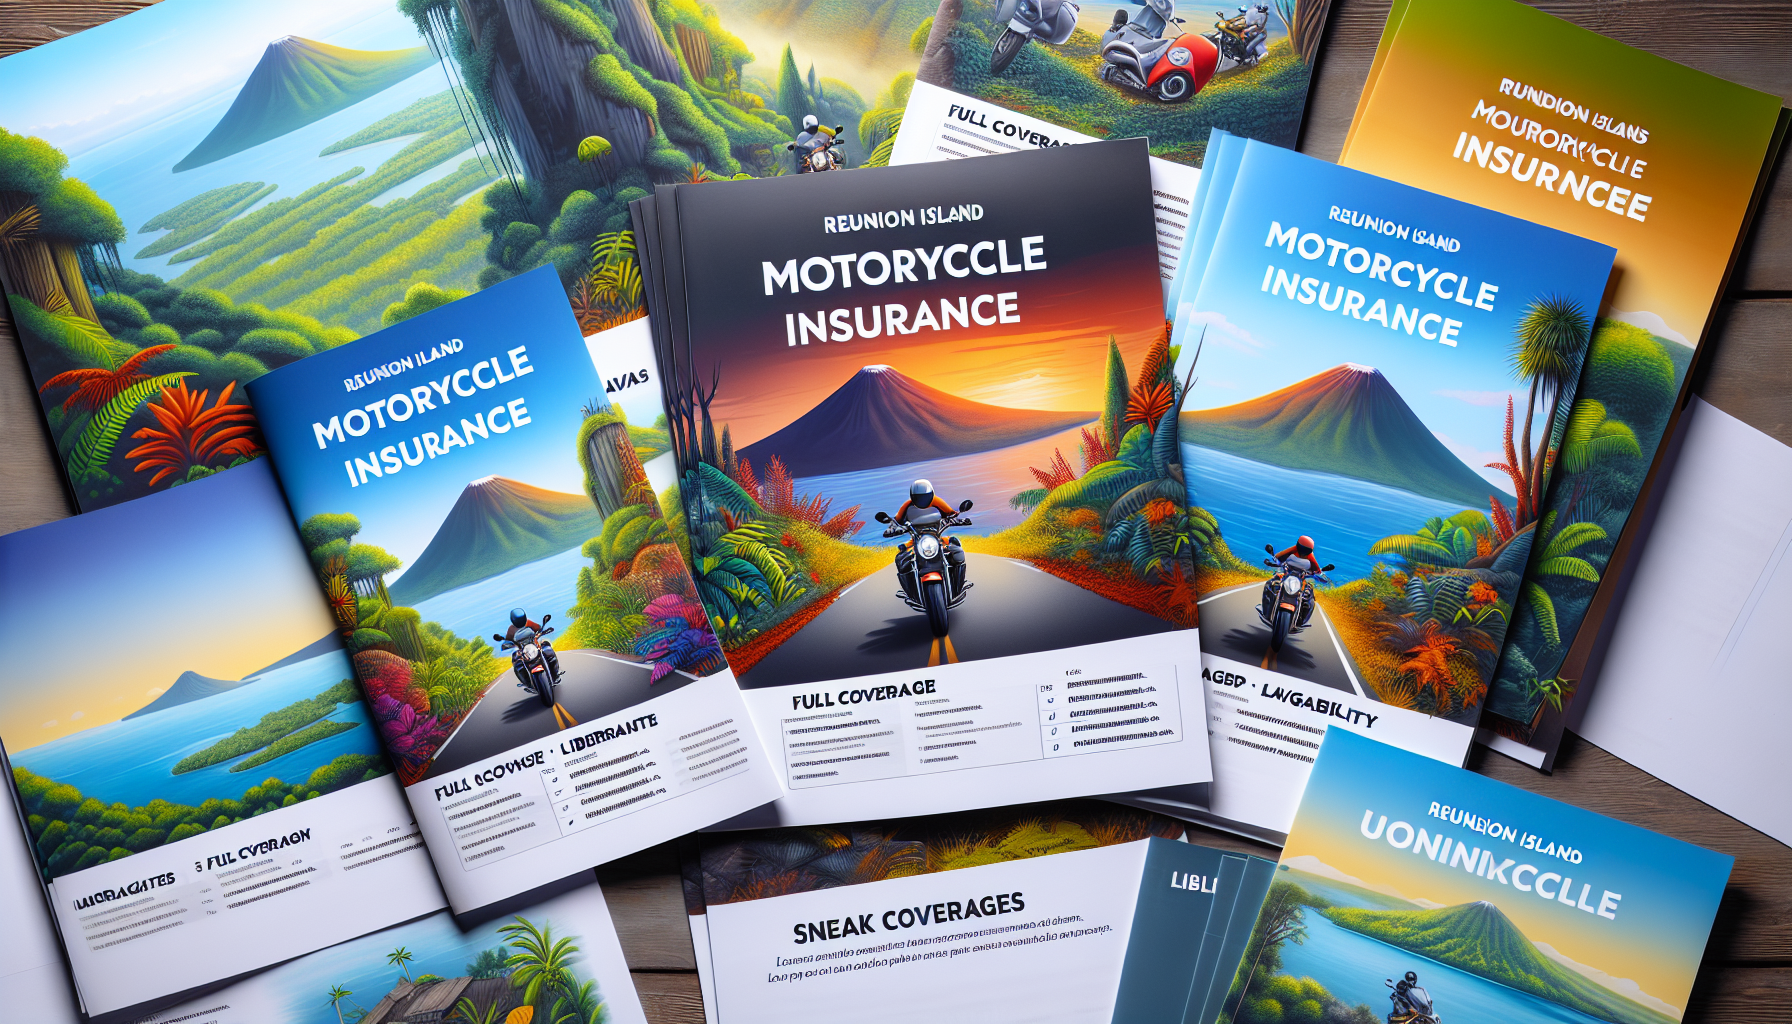 découvrez les différents types d'assurance moto disponibles à la réunion pour protéger votre véhicule et circuler en toute sérénité sur l'île.